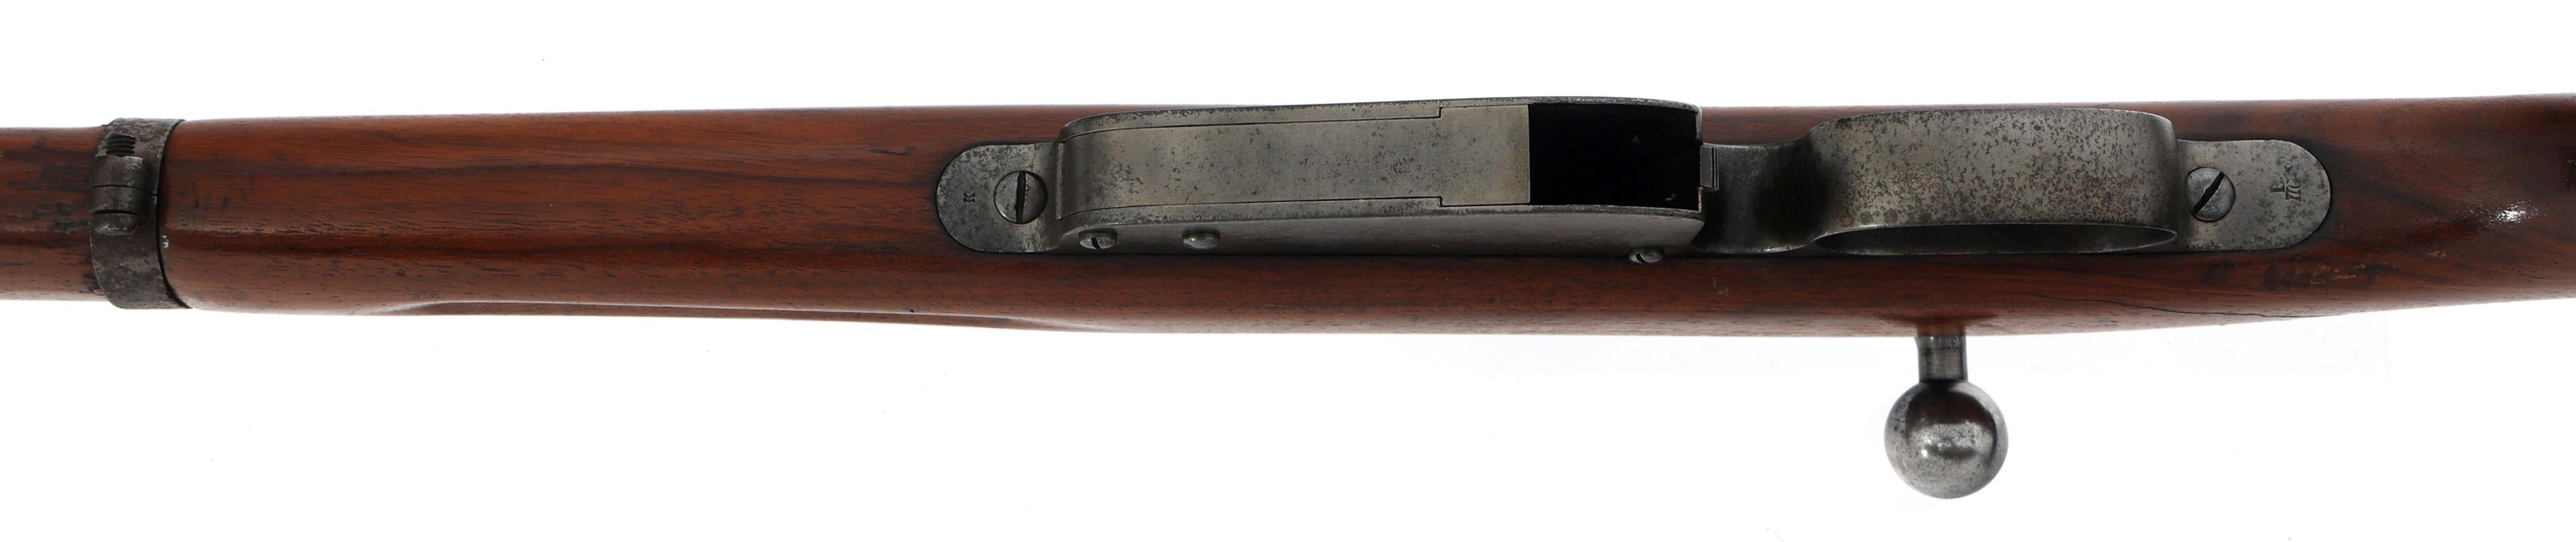 STEYR MANNLICHER MODEL 1886 11mm CALIBER RIFLE